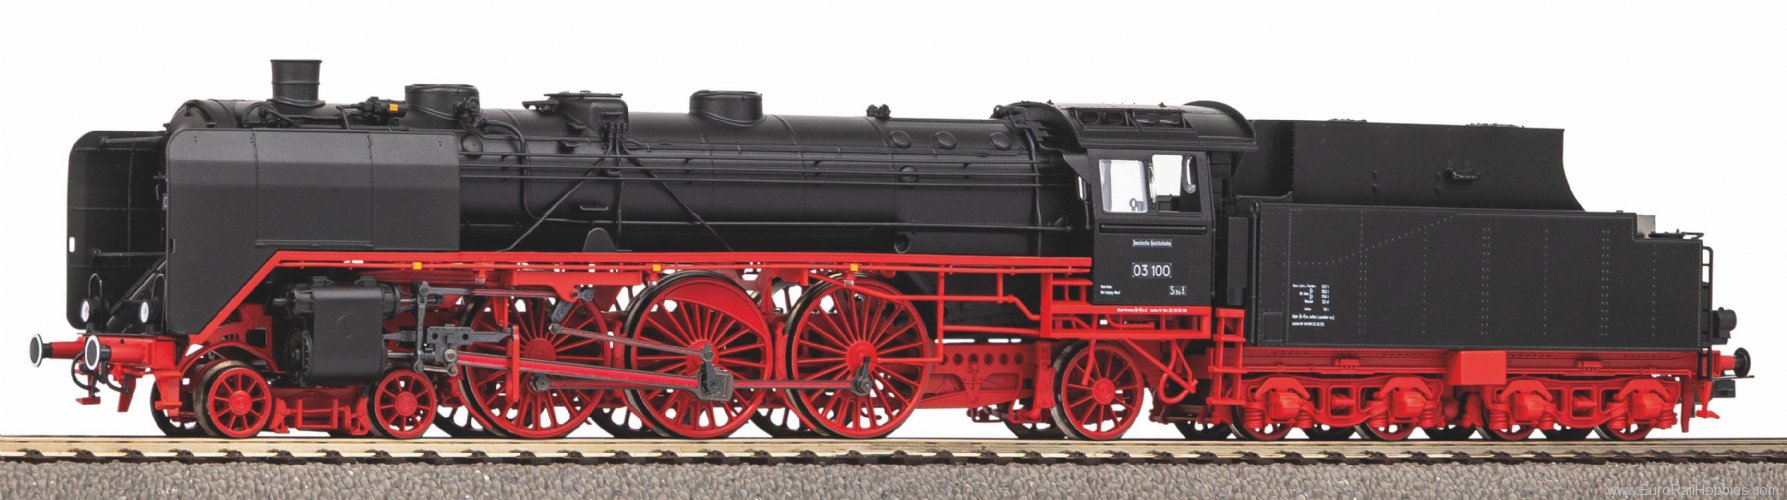 Piko 50685 steam Locomotive BR 03 DR III, incl. PIKO sou